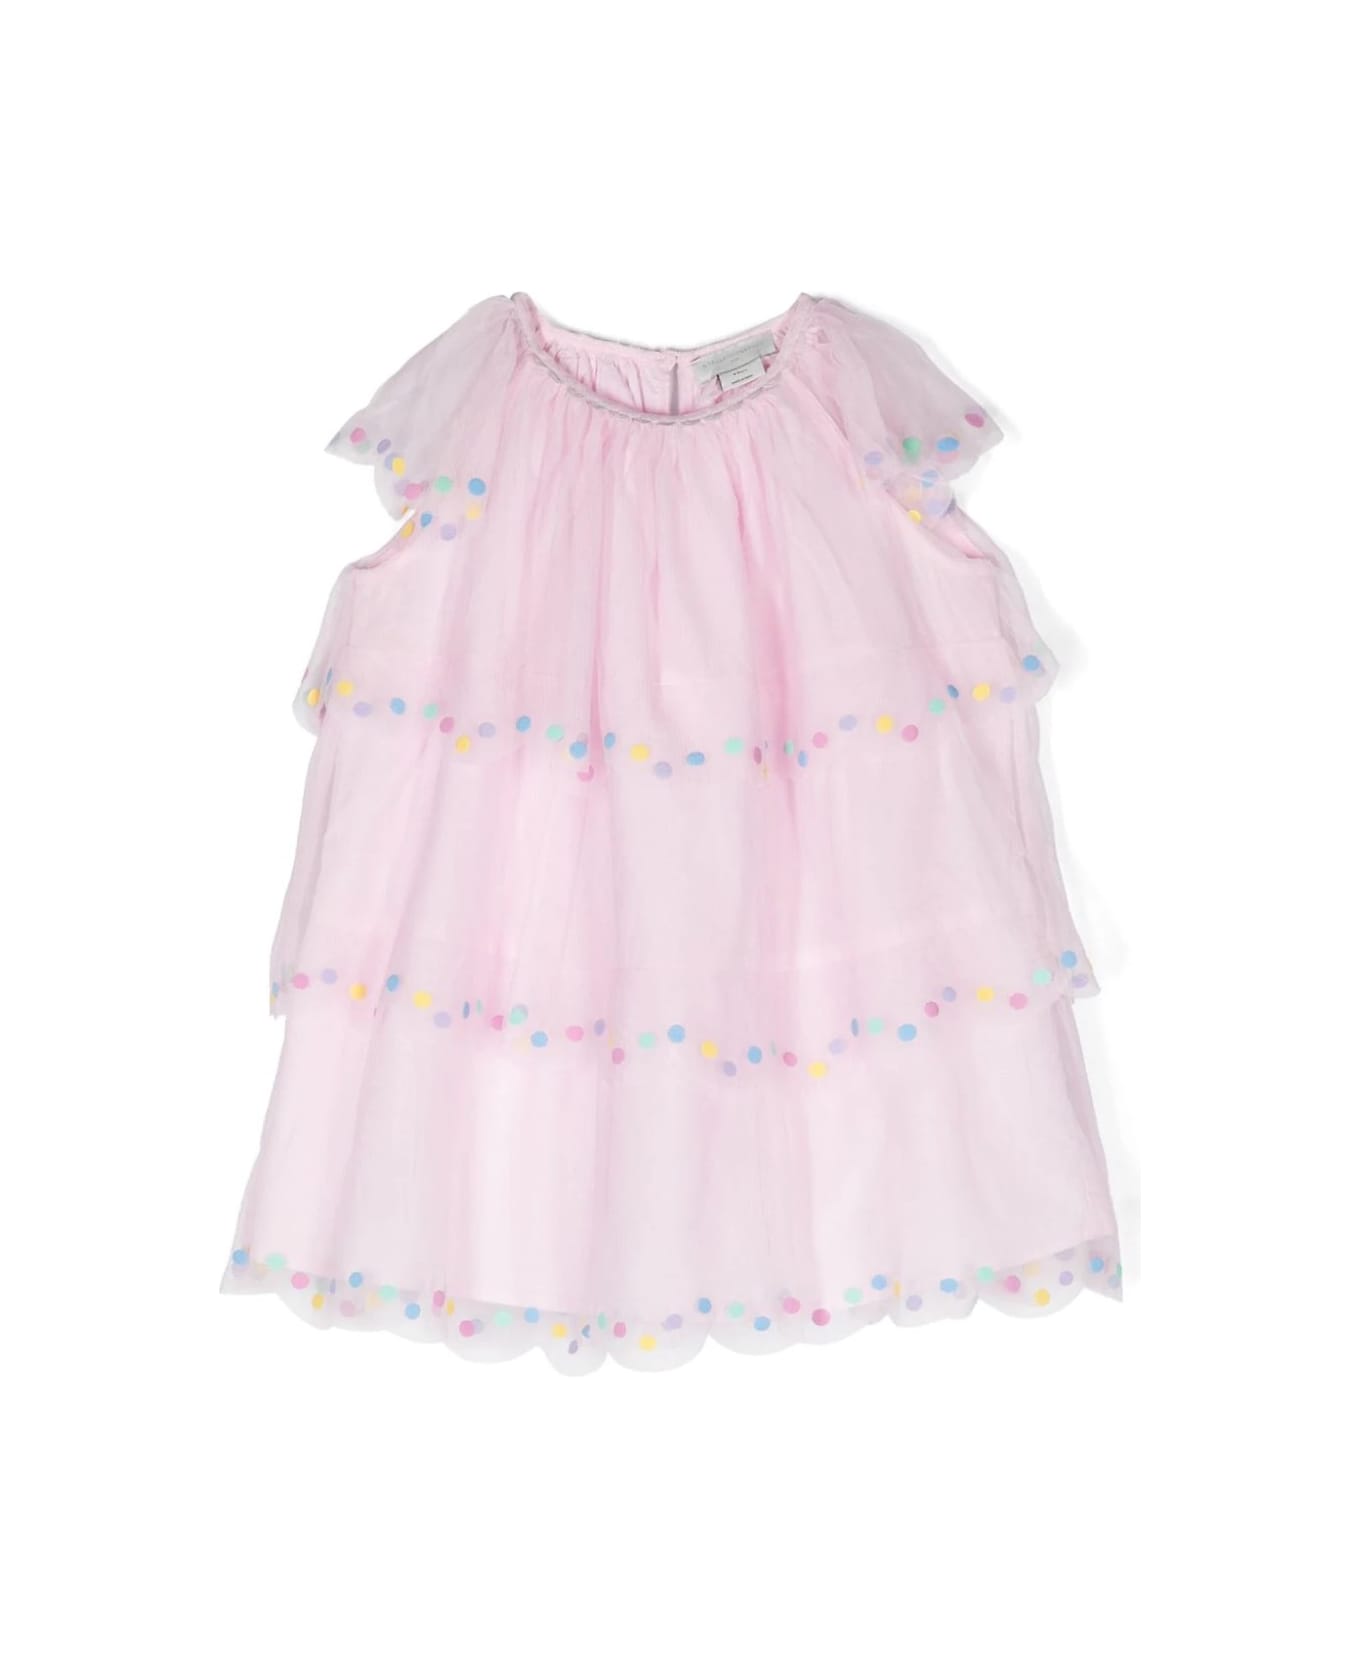 Stella McCartney Kids Confetti Polka Dot Layered Dress - Pink